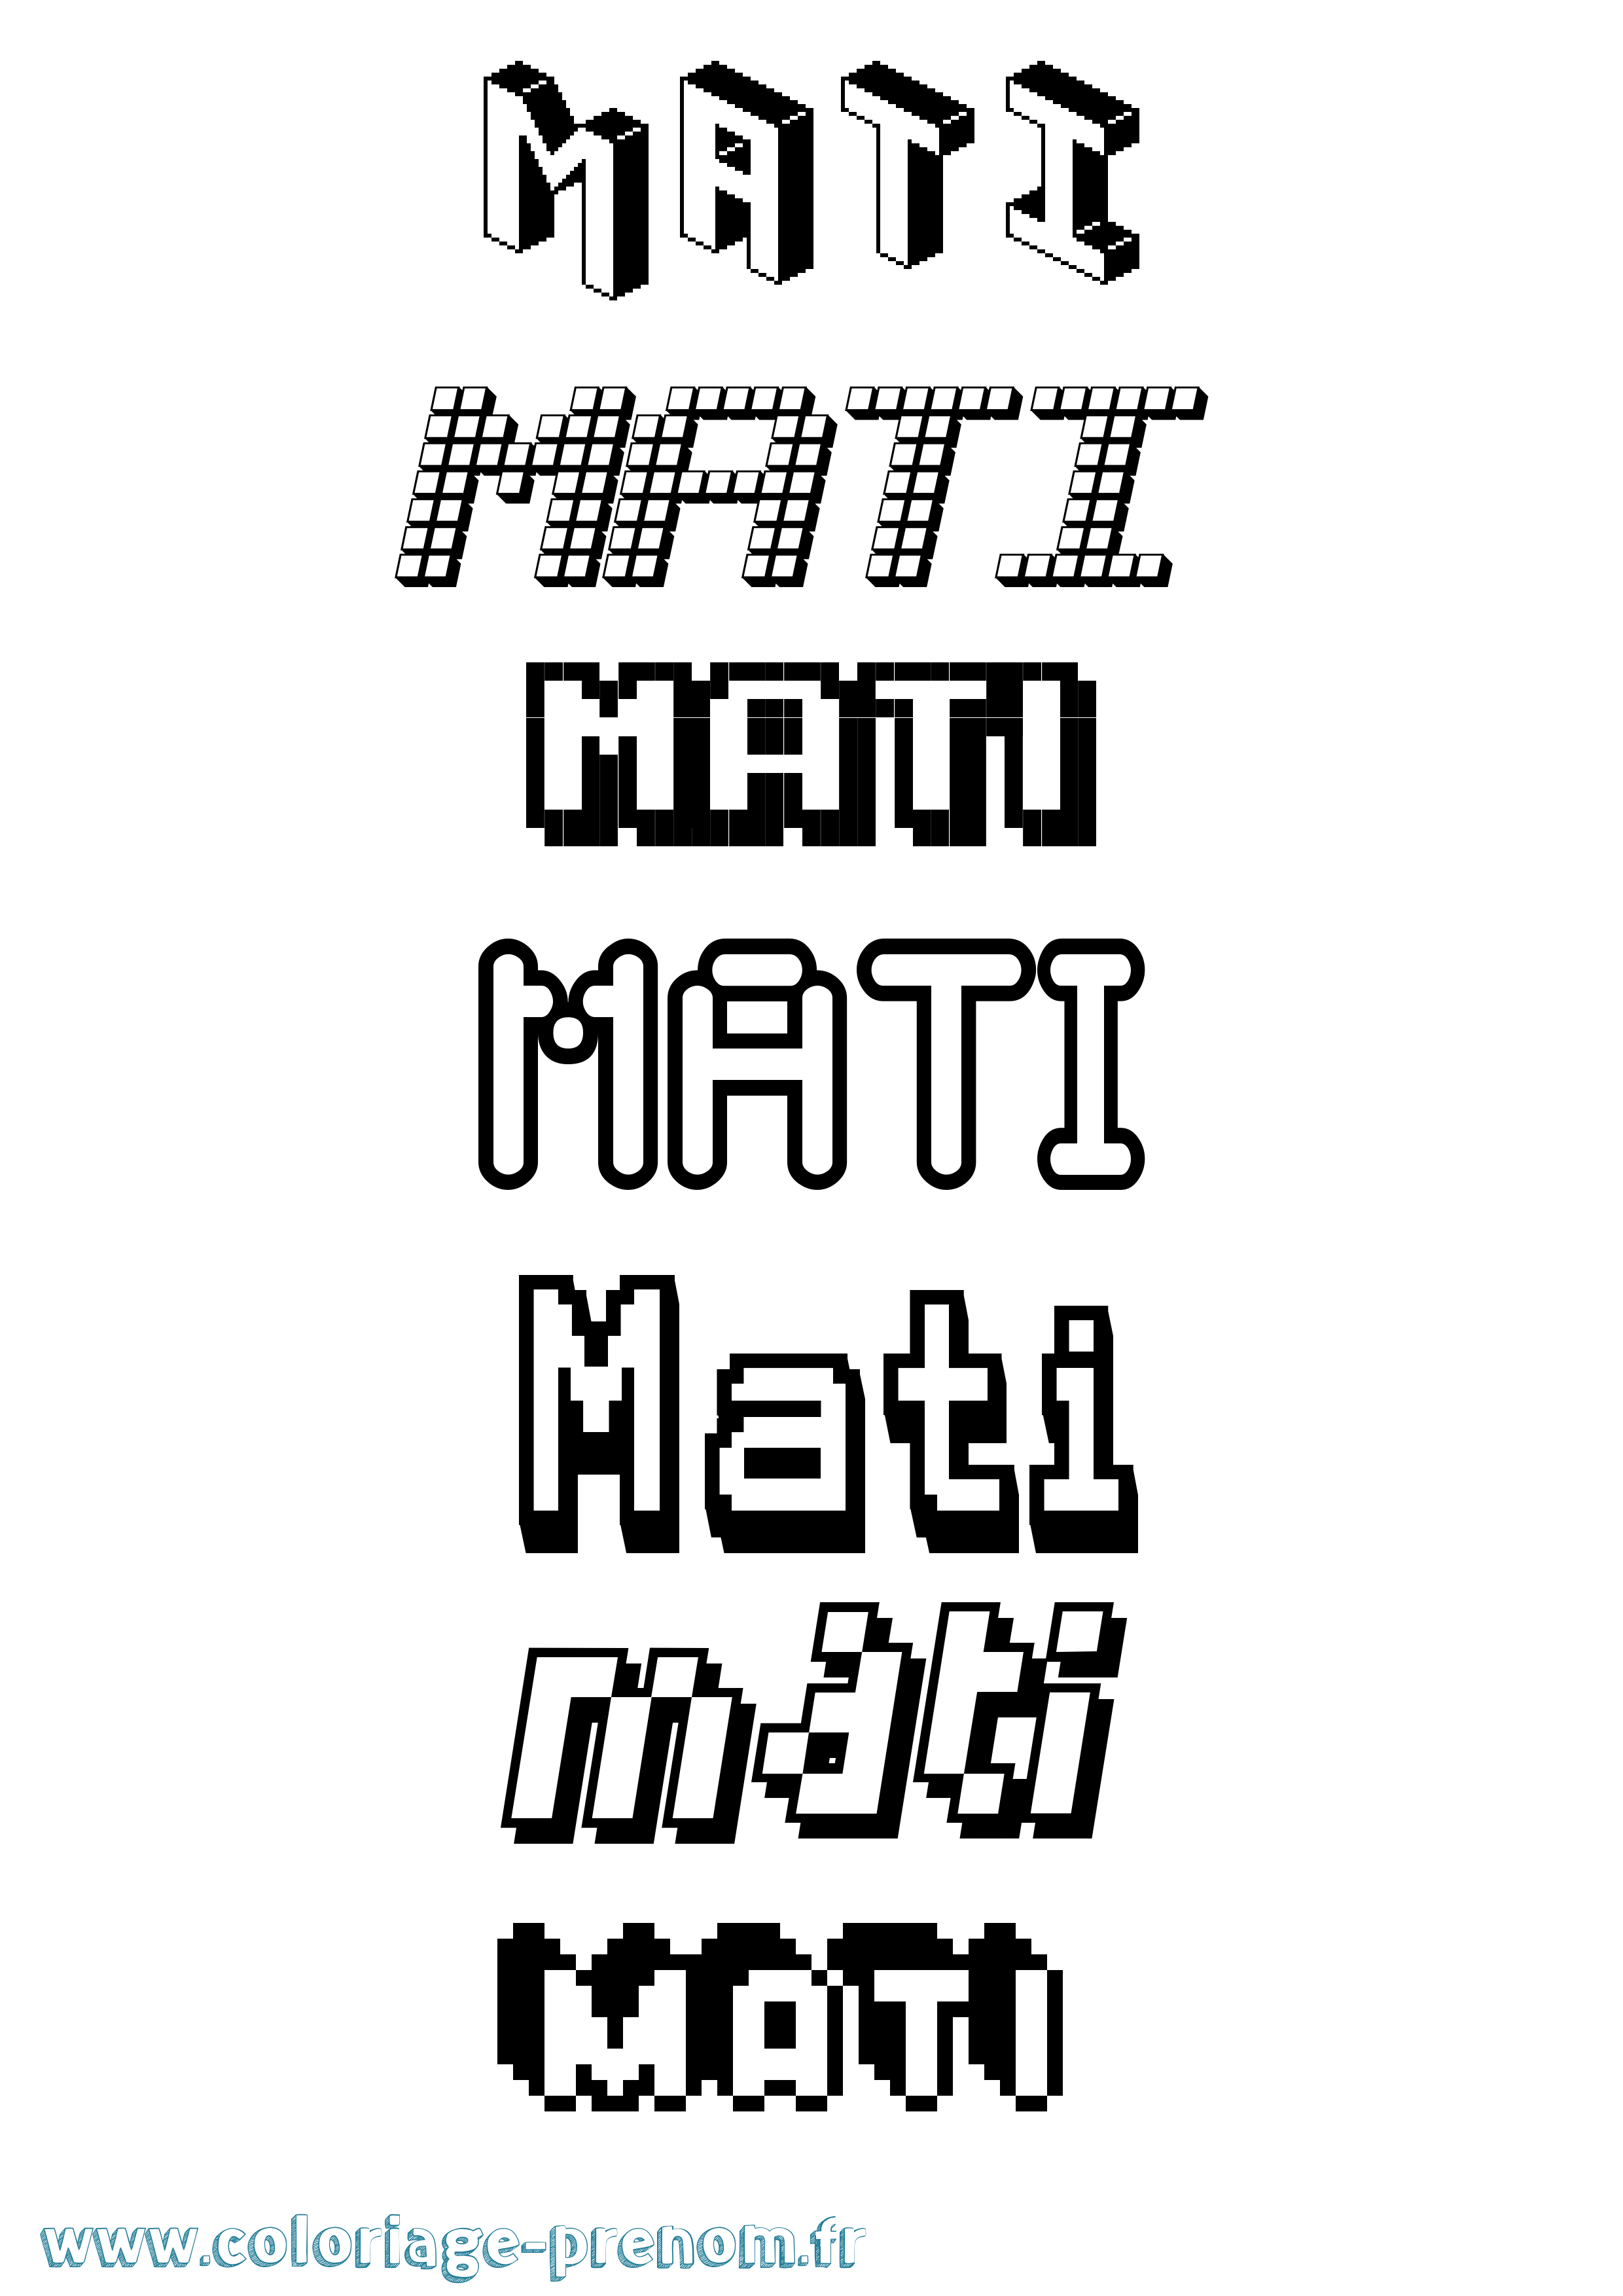 Coloriage prénom Mati Pixel